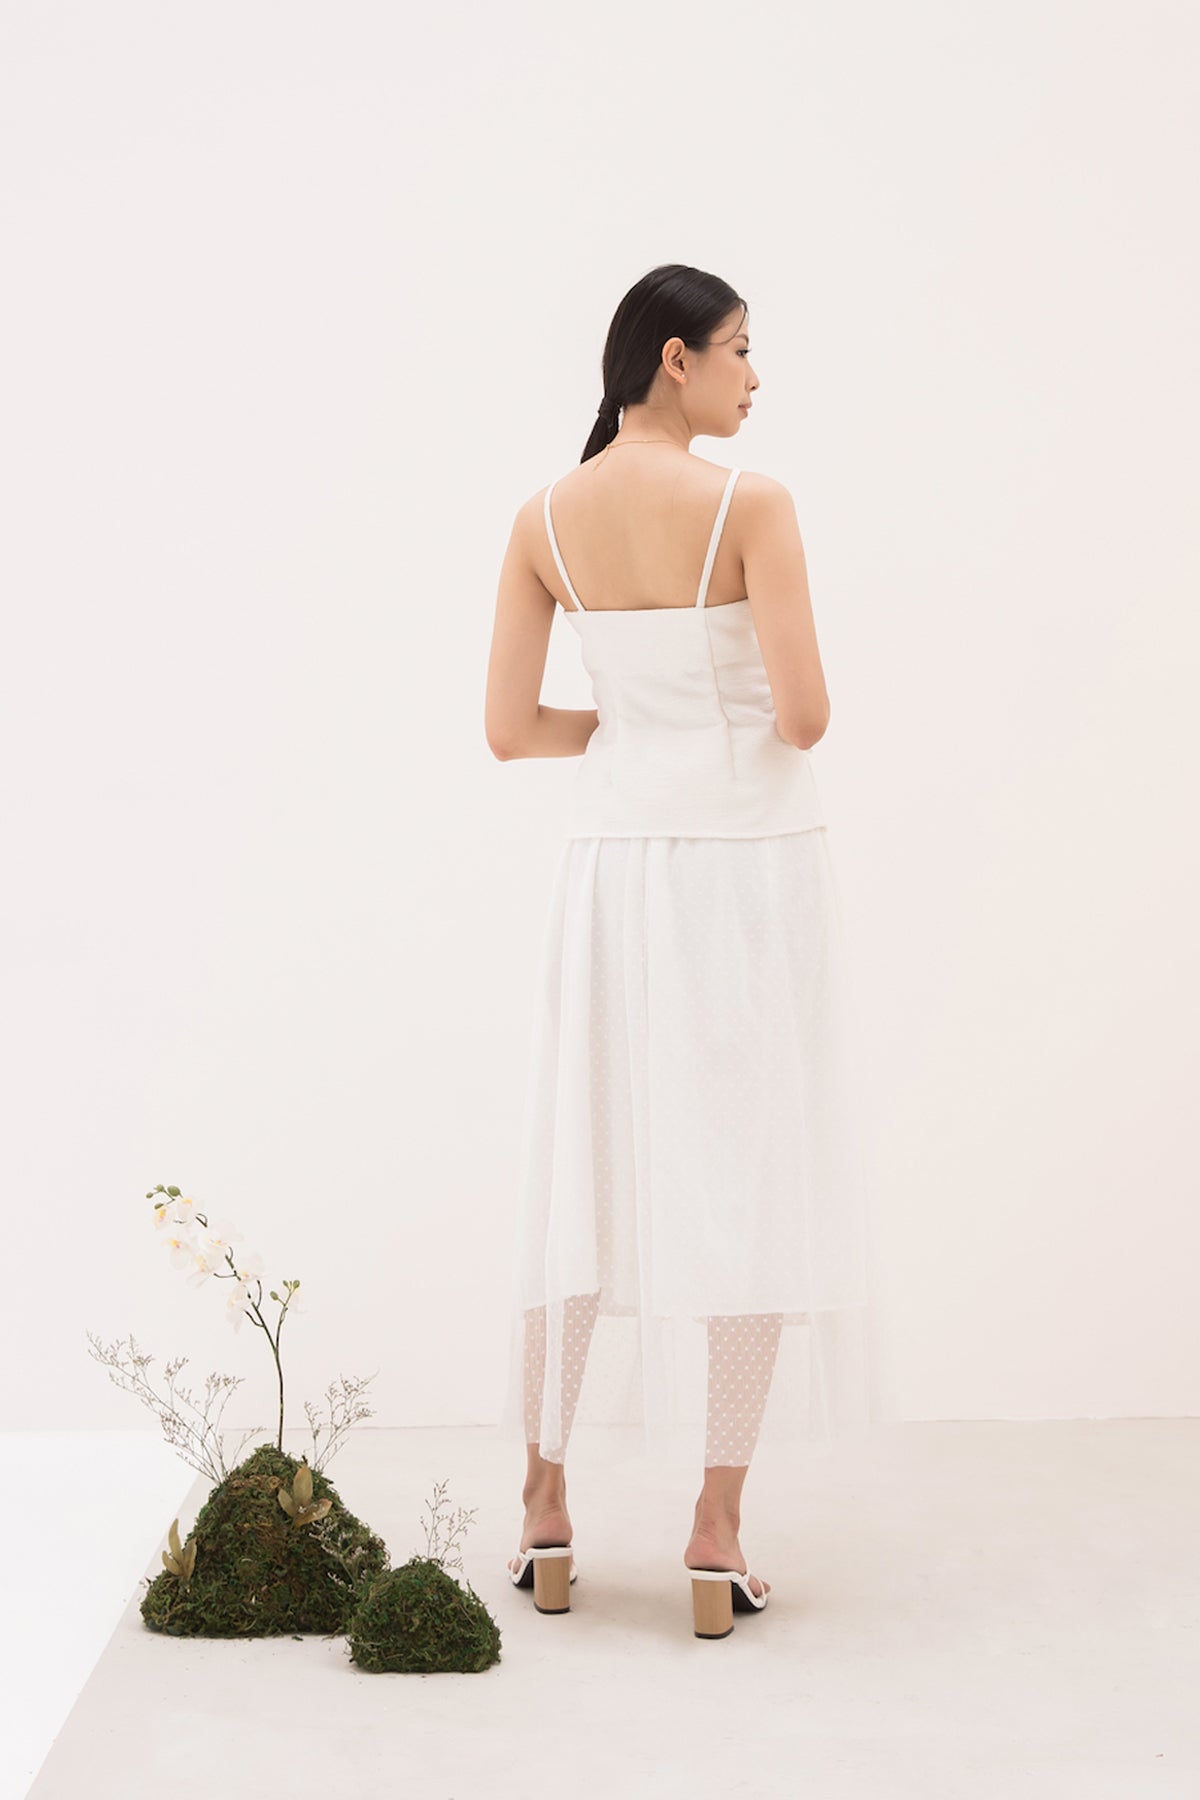 Lea Skirt in White (2 Left)